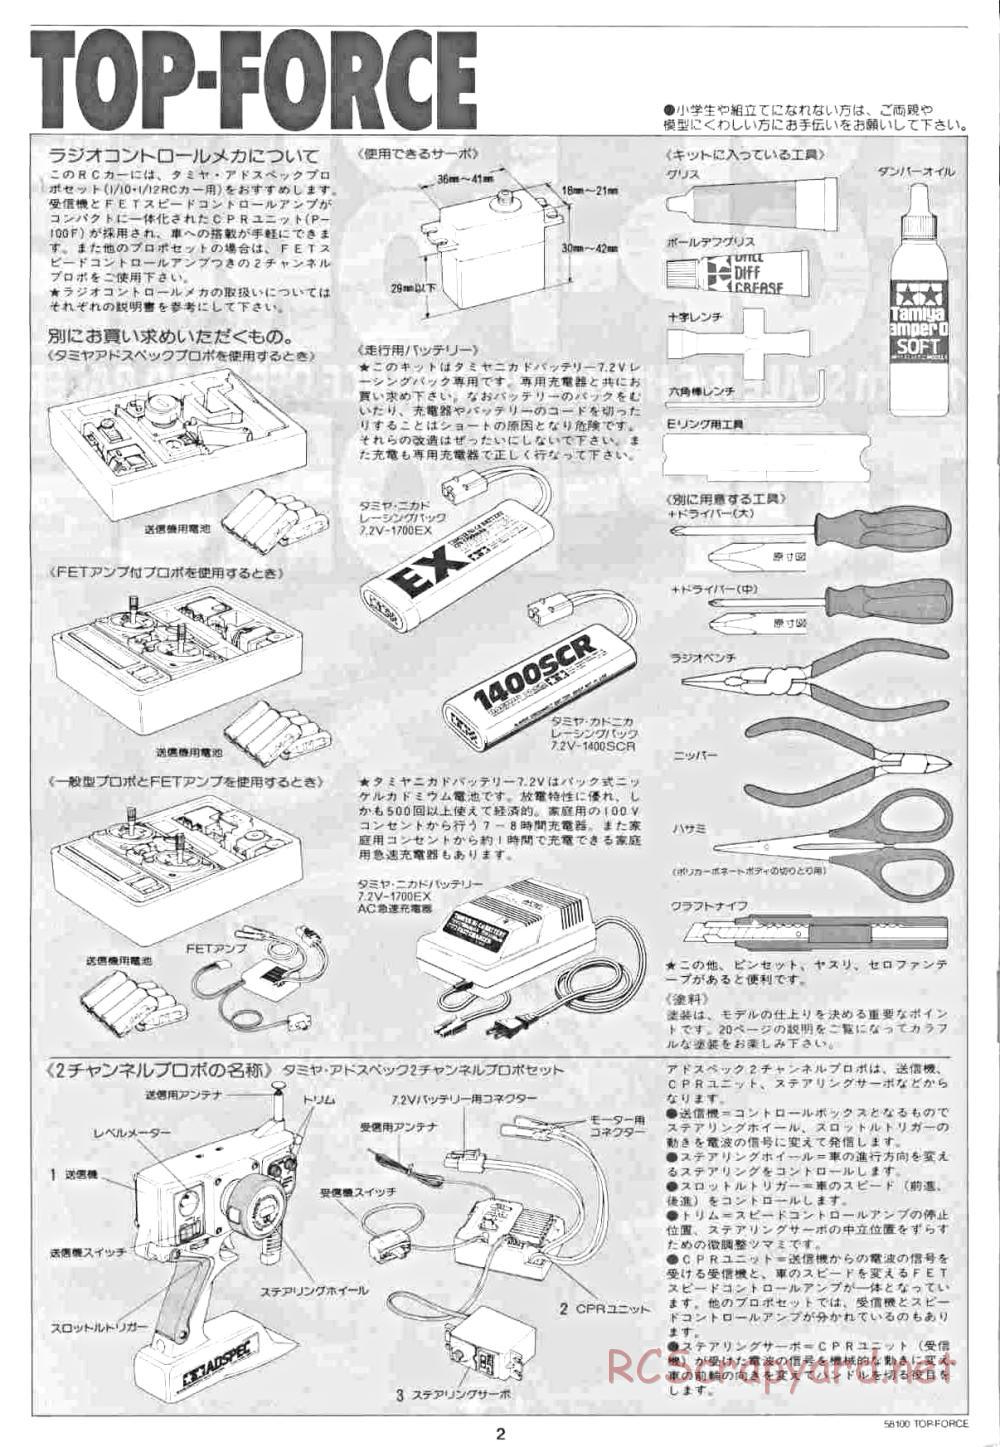 Tamiya - Top Force - 58100 - Manual - Page 2